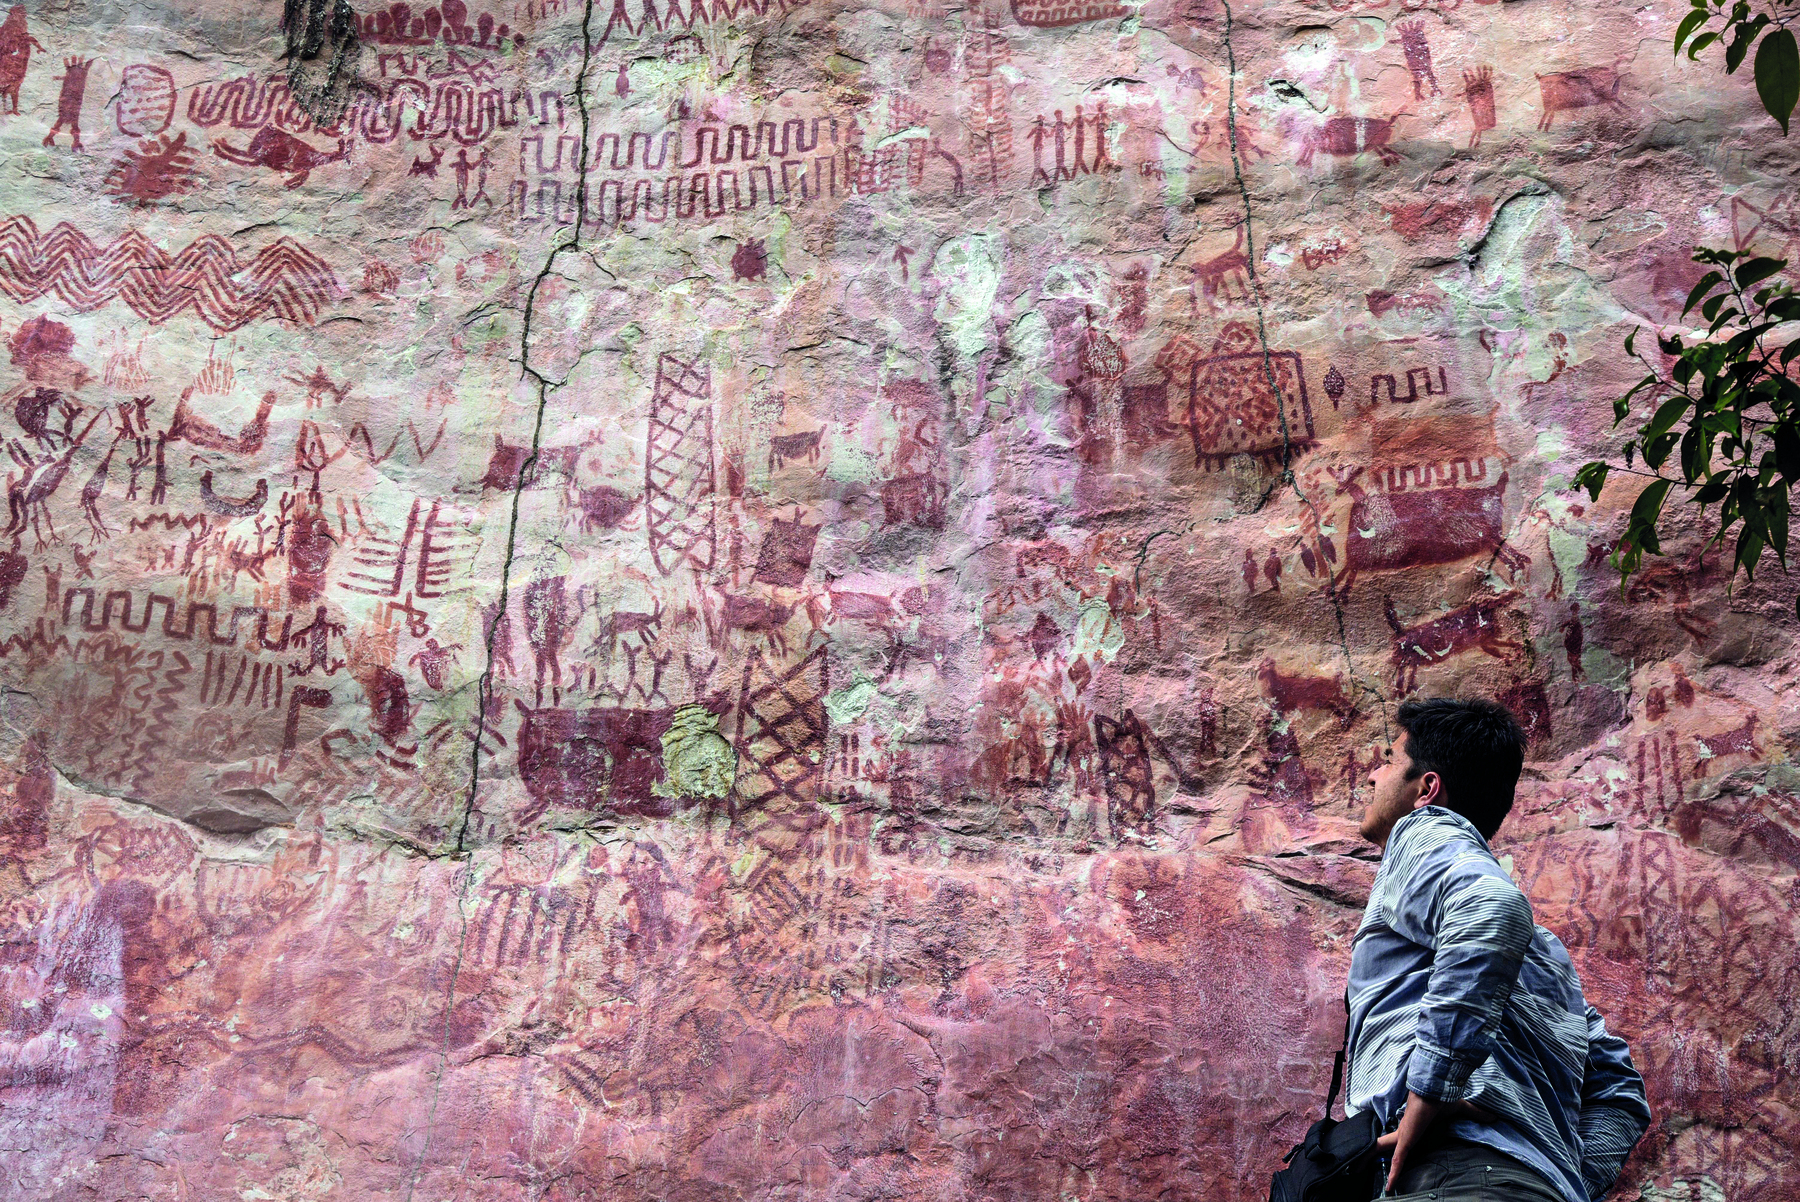 Fotografia. Um homem em pé, com cabelos escuros, curtos e lisos, vestindo uma camisa cinza, com o olhar voltado para uma grande parede de rocha contendo diversos registros rupestres representando animais, pessoas e símbolos.